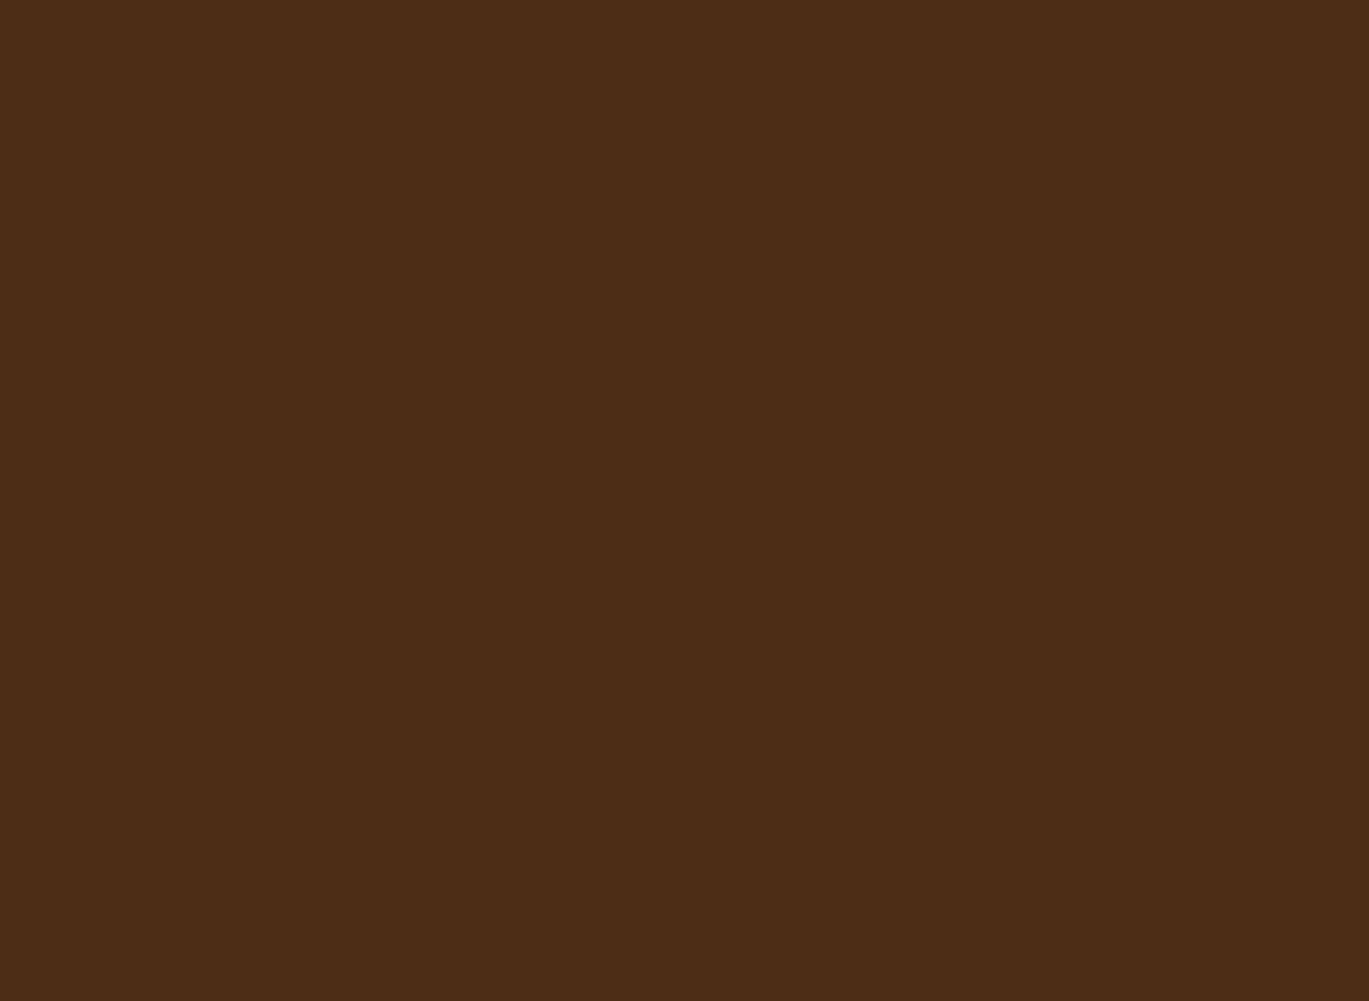 Илья Репин. Иван Грозный убивает своего сына. 1885. Государственная Третьяковская галерея